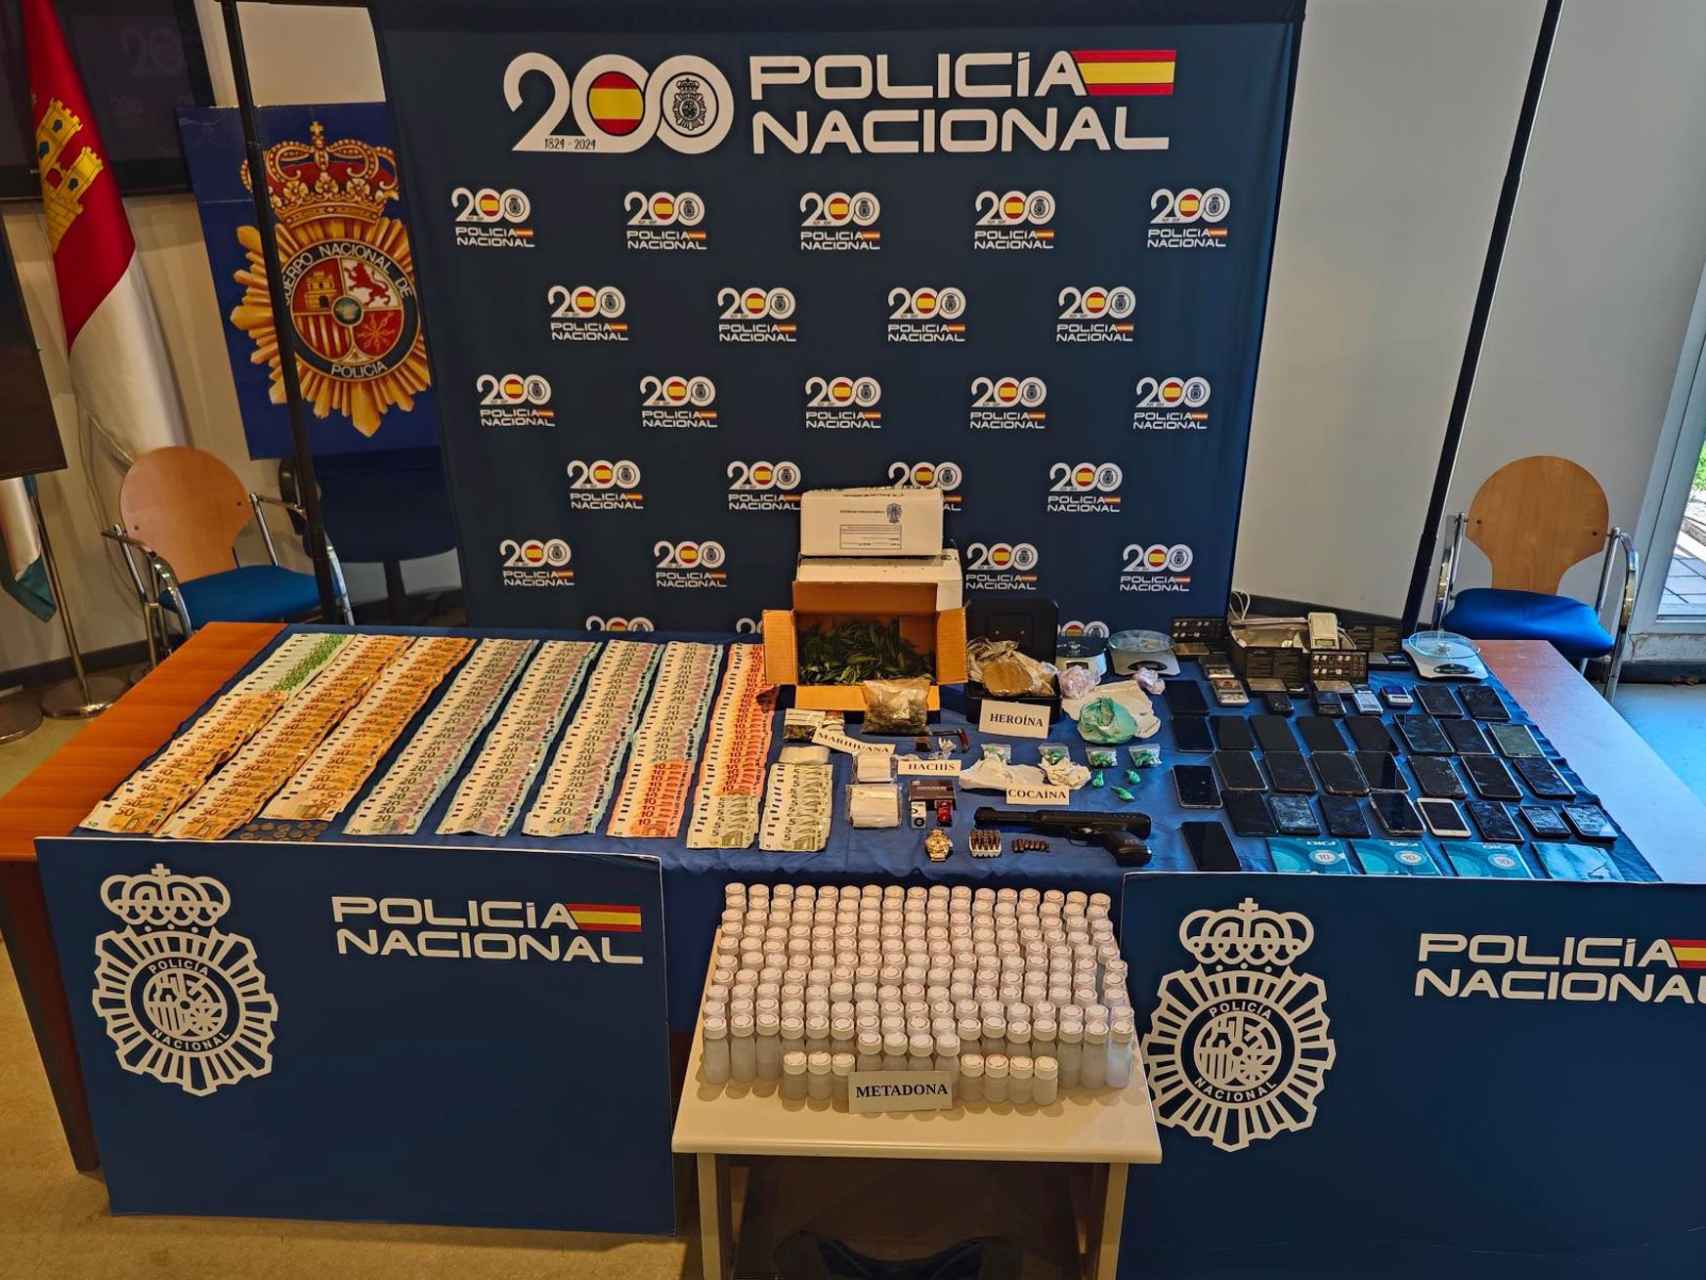 La Policia Nacional desmantela uno de los principales puntos negros de distribución de opiáceos en la comarca de Talavera de la Reina.